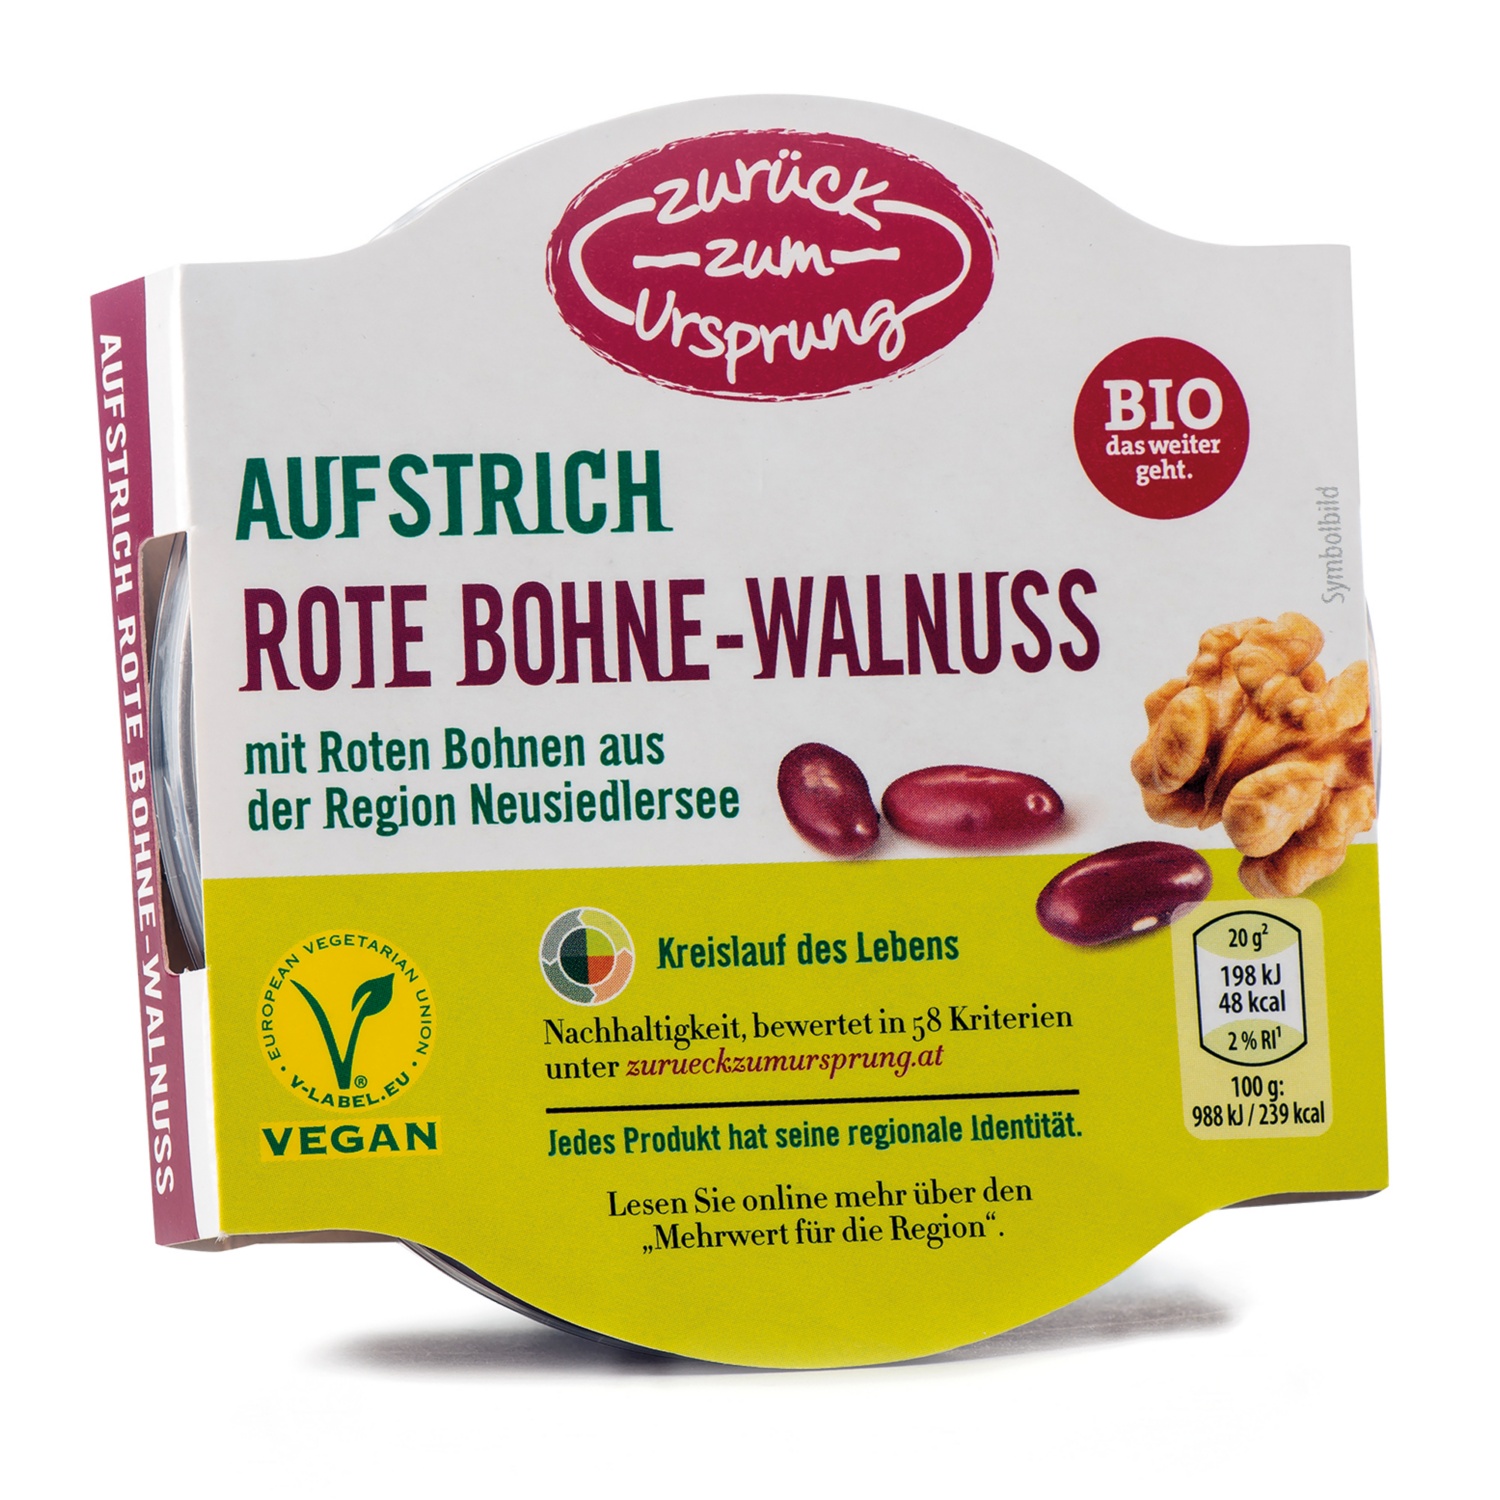 ZURÜCK ZUM URSPRUNG BIO Veganer Aufstrich, Rote Bohne-Walnuss